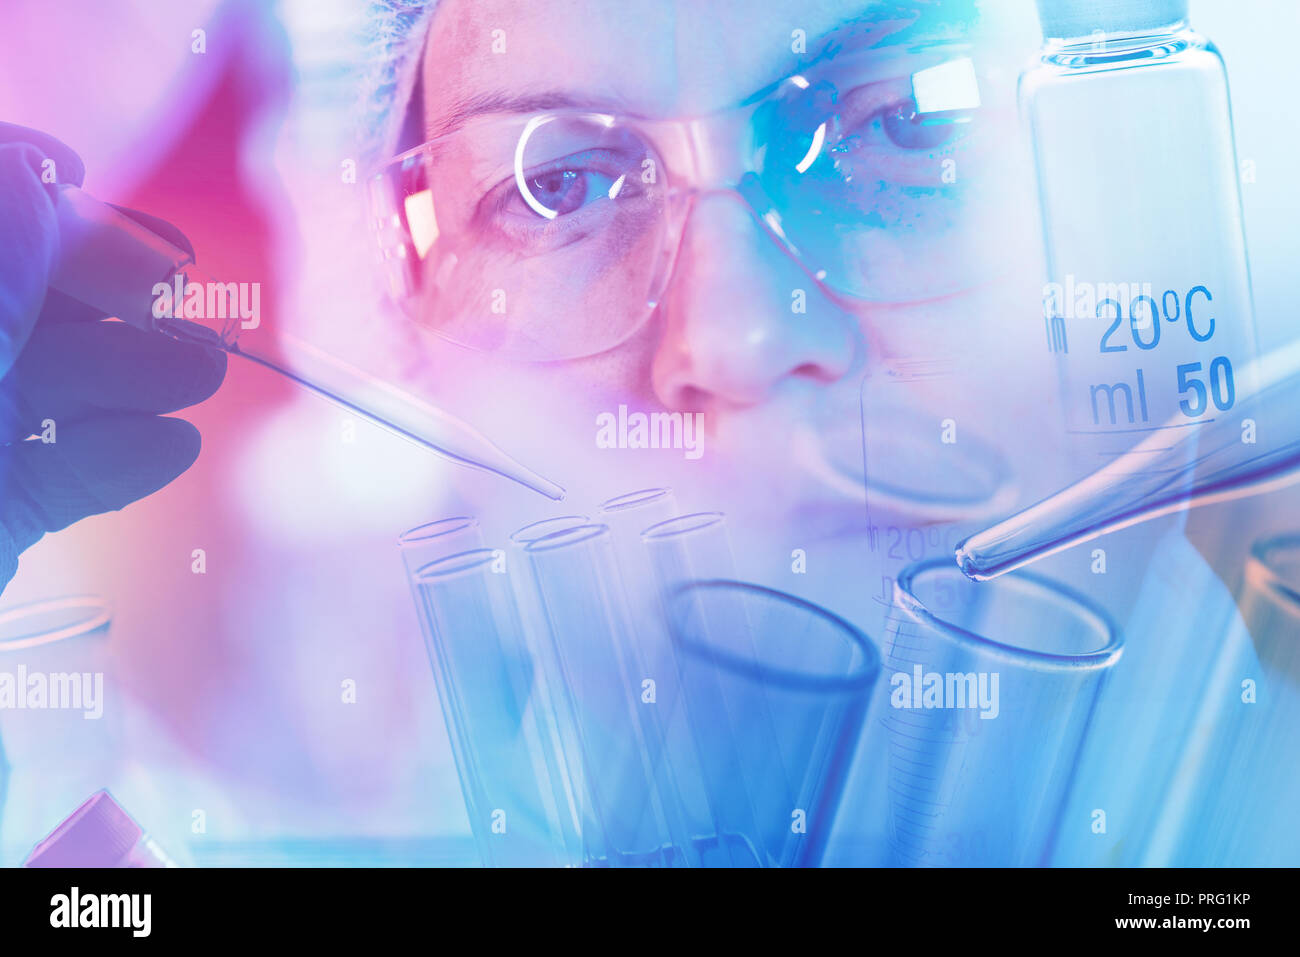 Científico médico trabajando con el material de vidrio de laboratorio, Imagen conceptual de equipamiento científico para la investigación en medicina y química Foto de stock